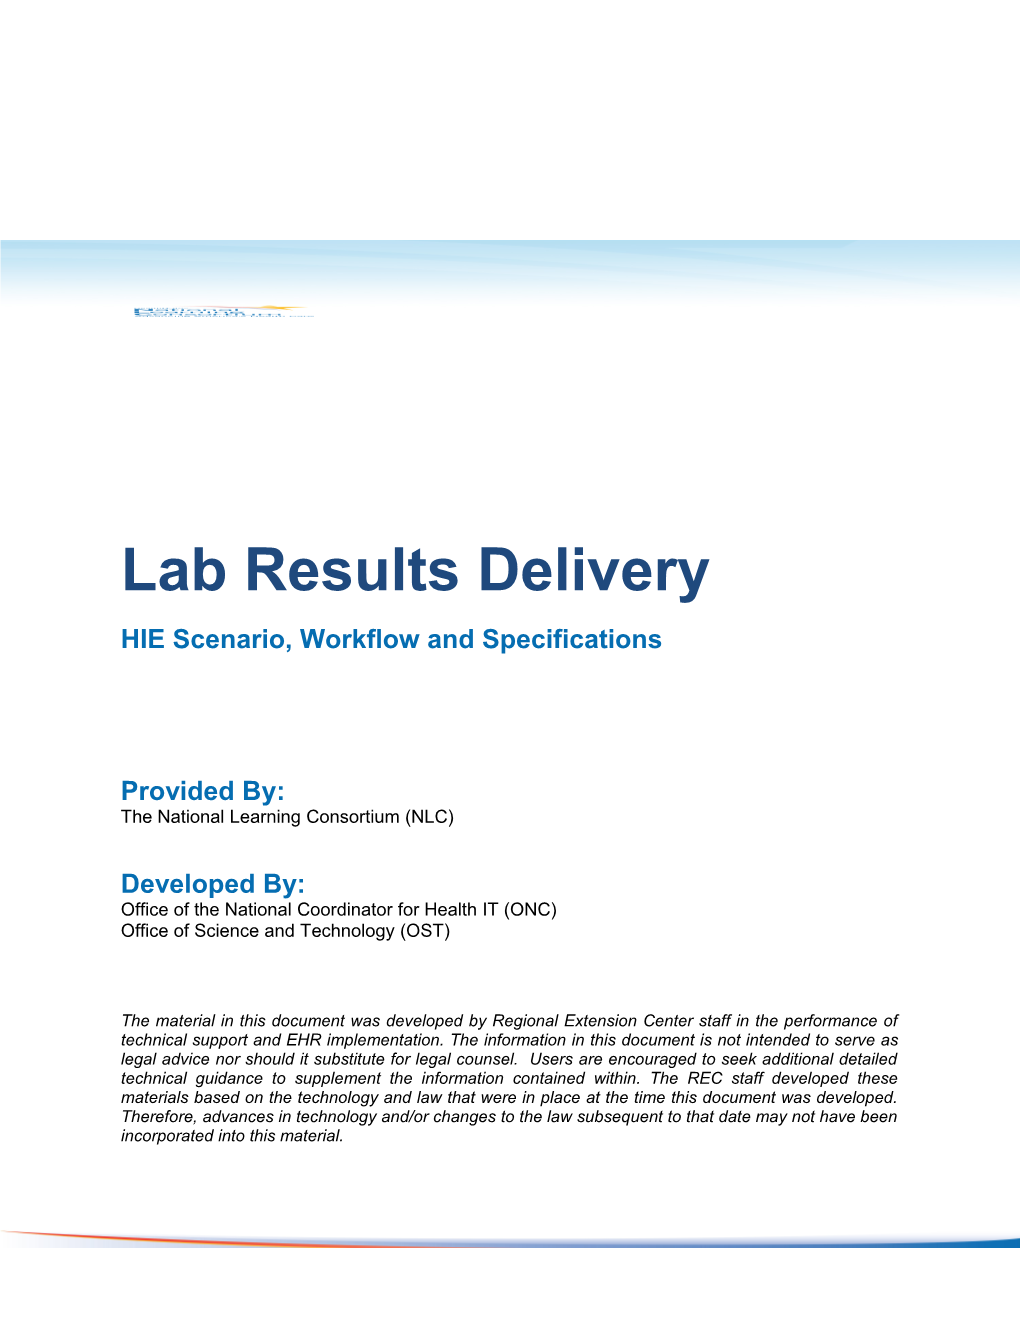 NLC Scenario Lab Results Delivery